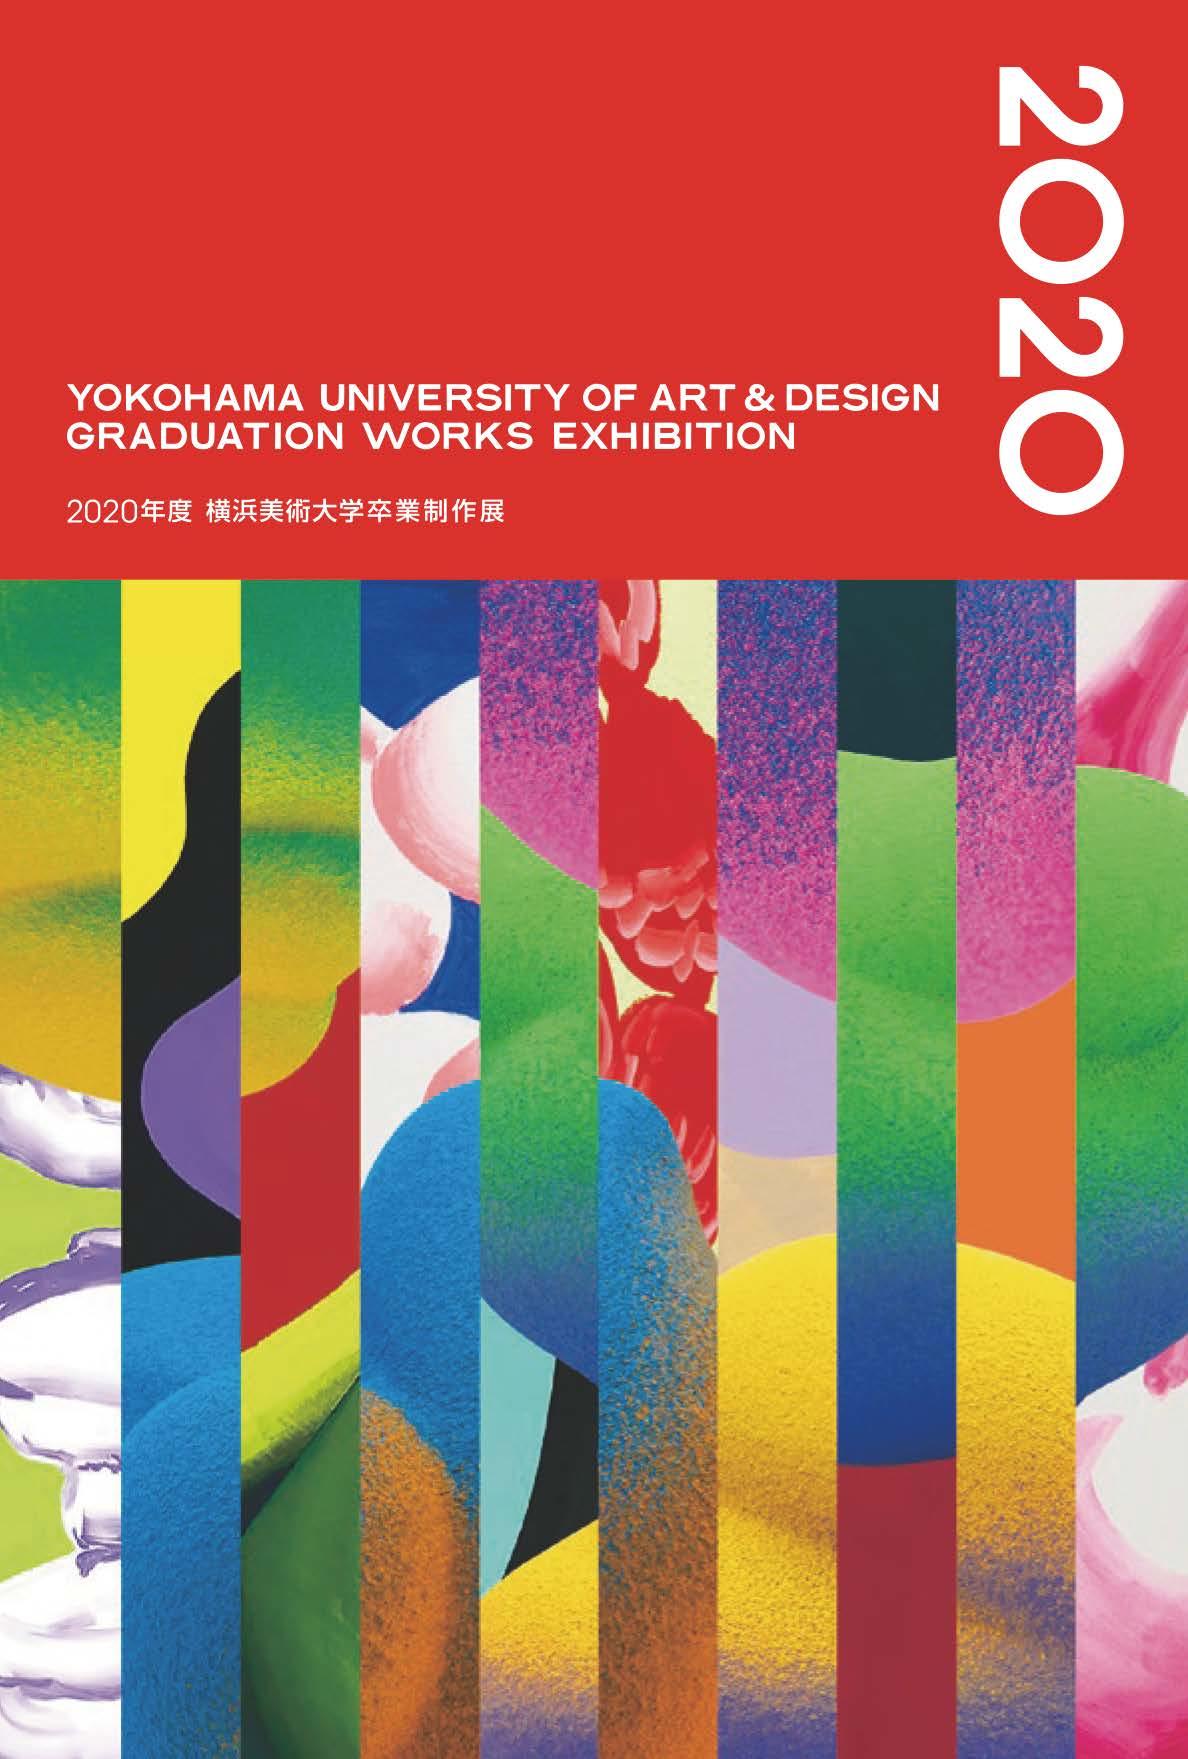 2020年度横浜美術大学卒業制作展を開催します